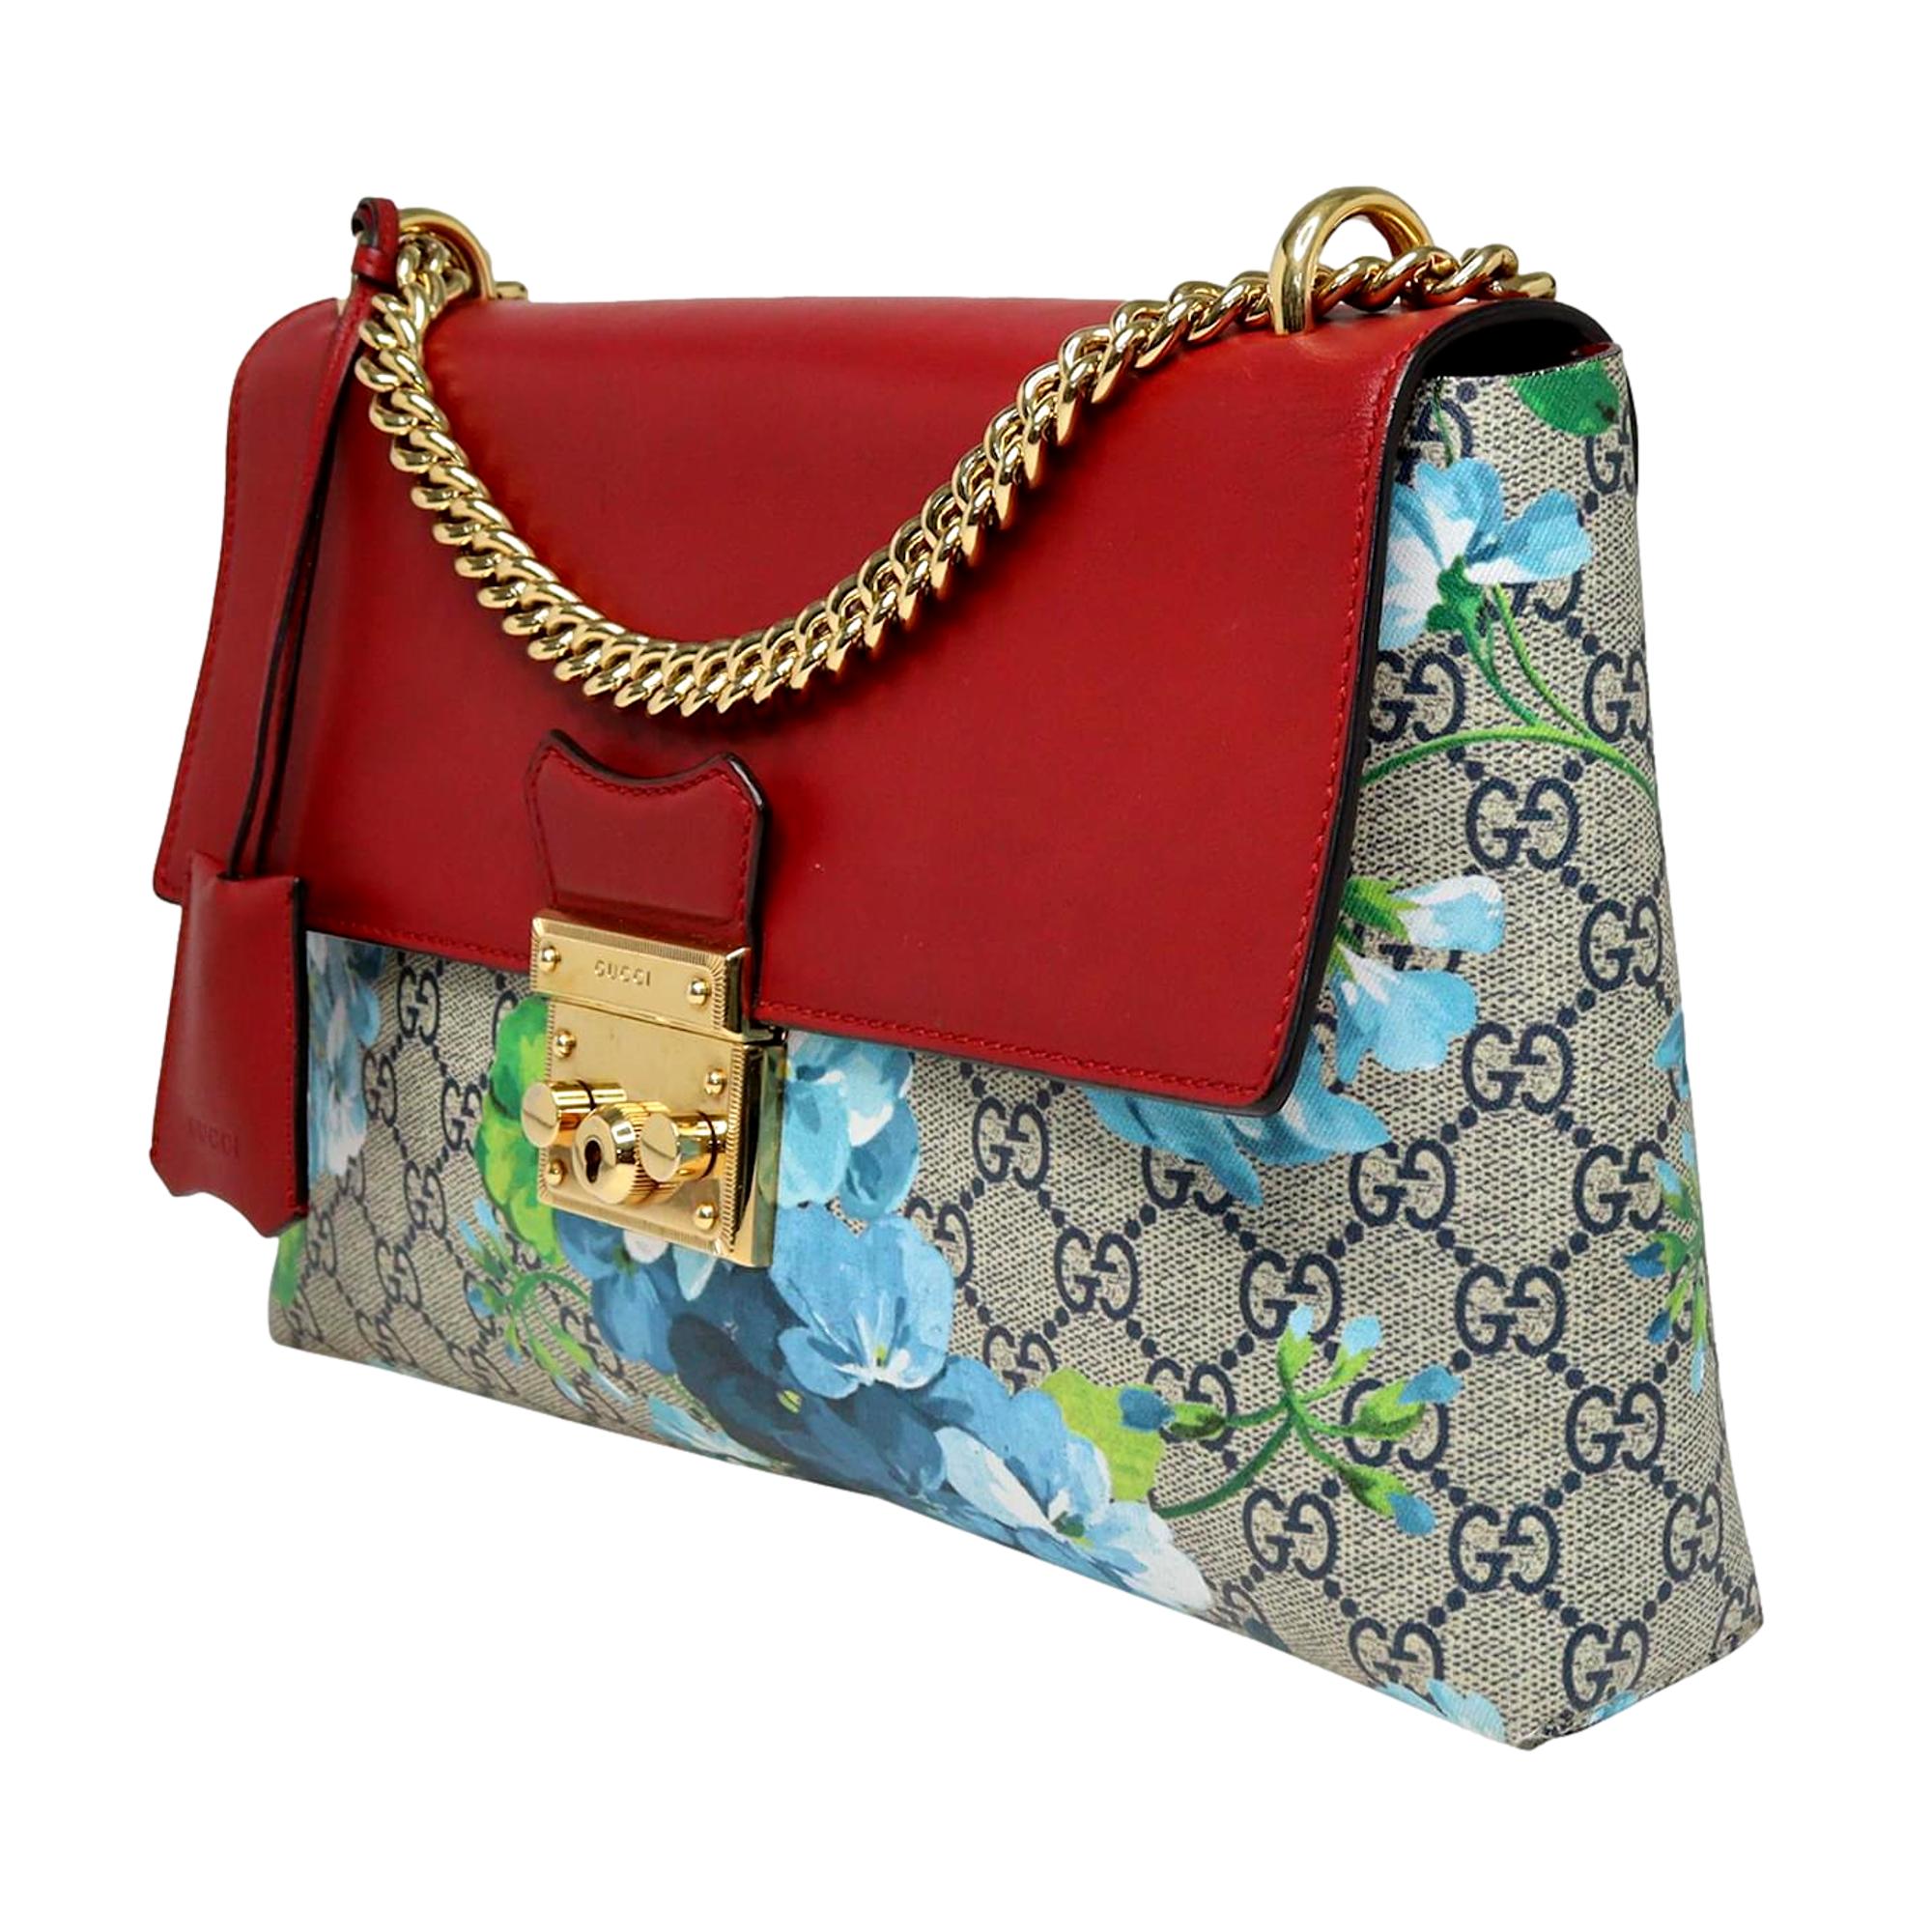 Gucci GG Monogram Padlock Floral Canvas Red Trim Shoulder Bag